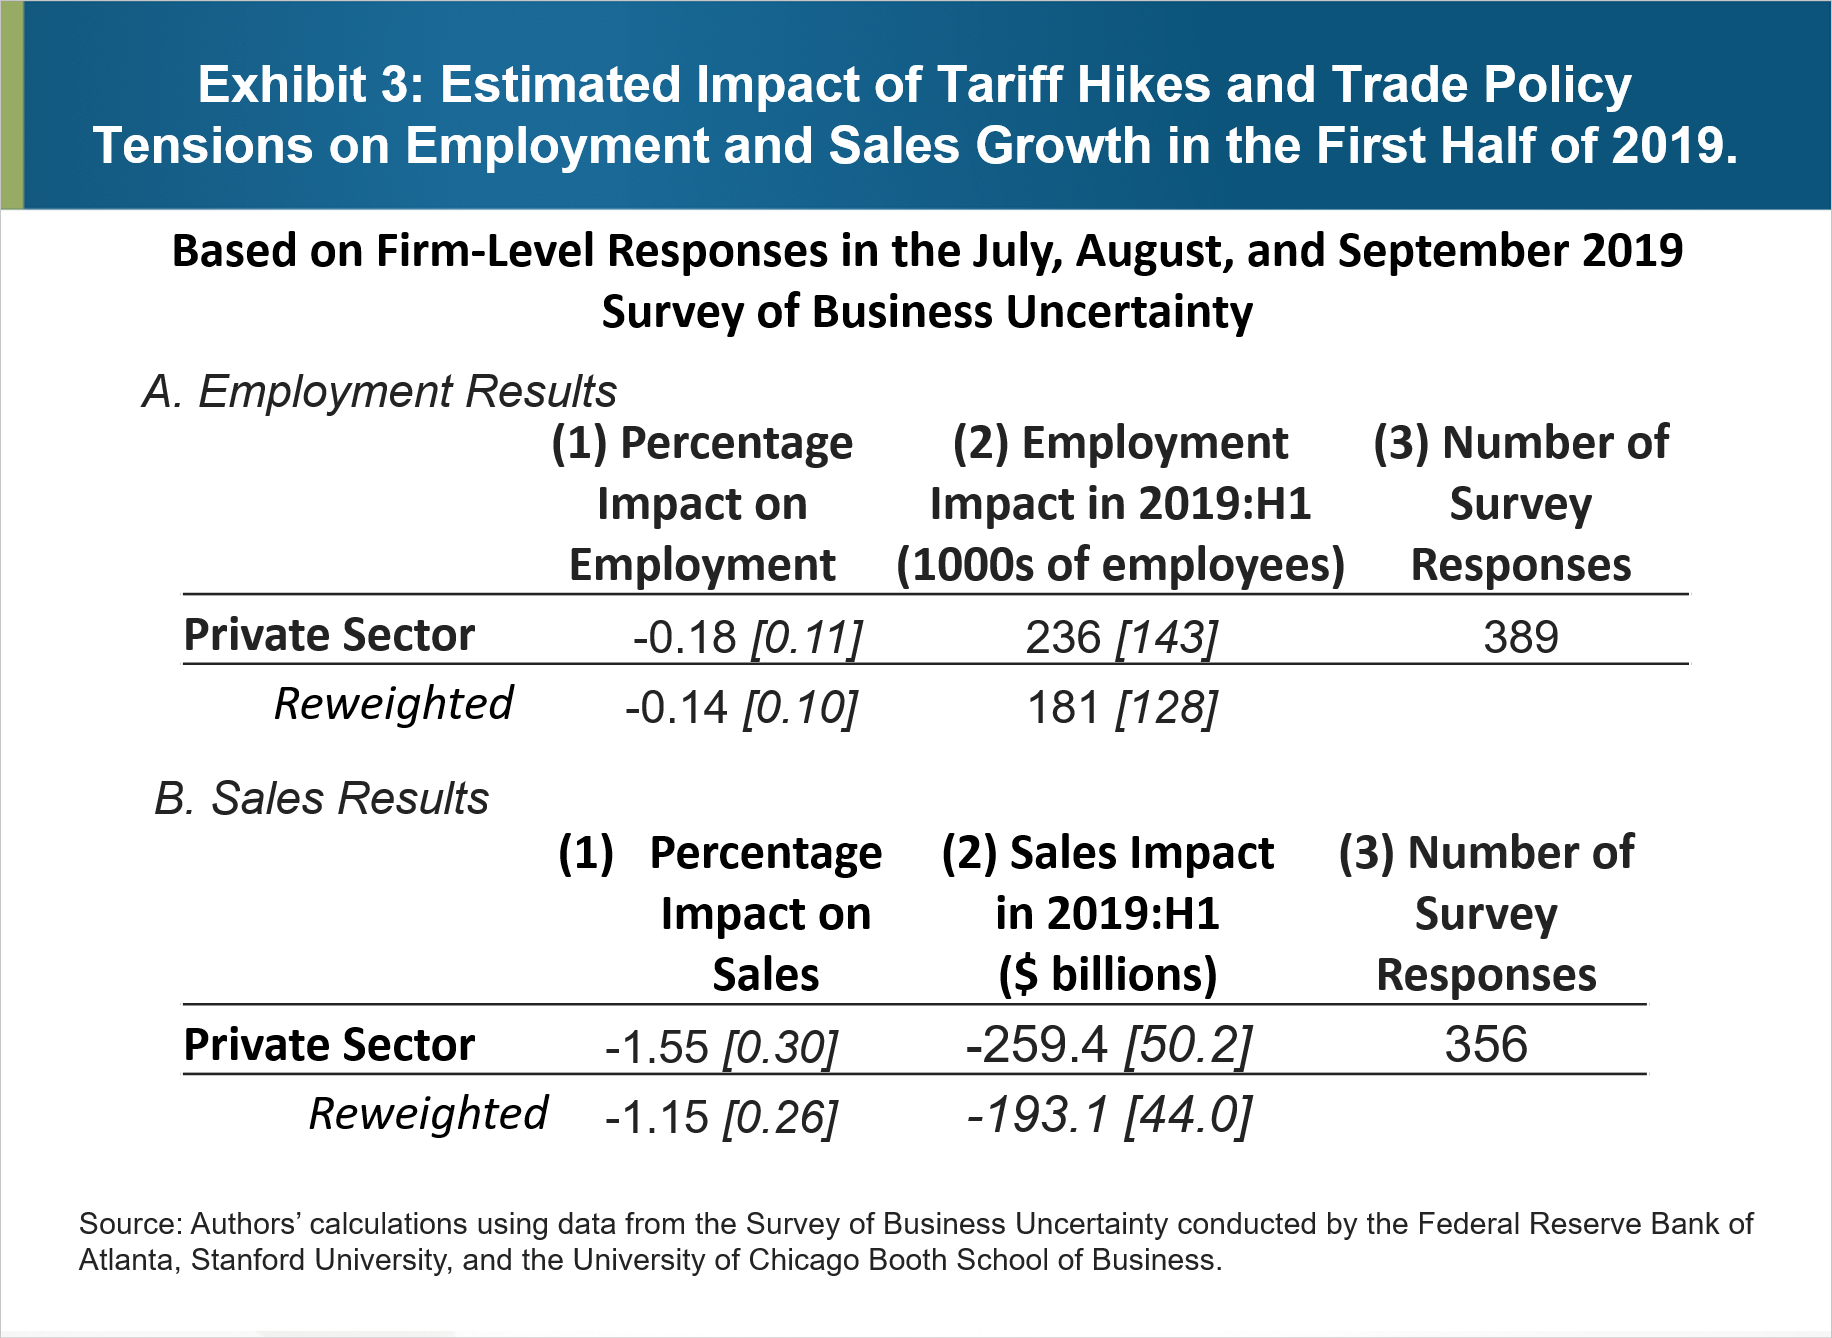 Figura 3: impatto stimato degli aumenti tariffari e delle tensioni nella politica commerciale sull'occupazione e sulla crescita delle vendite nella prima metà del 2019